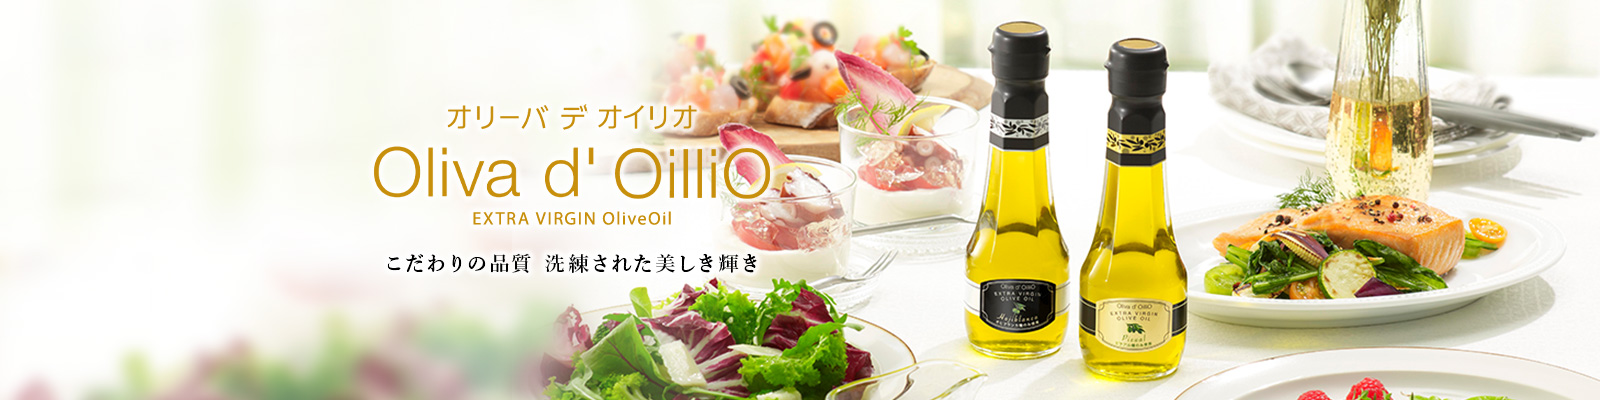 Oliva d' OilliO ギフト こだわりの品質 洗練された美しき輝き